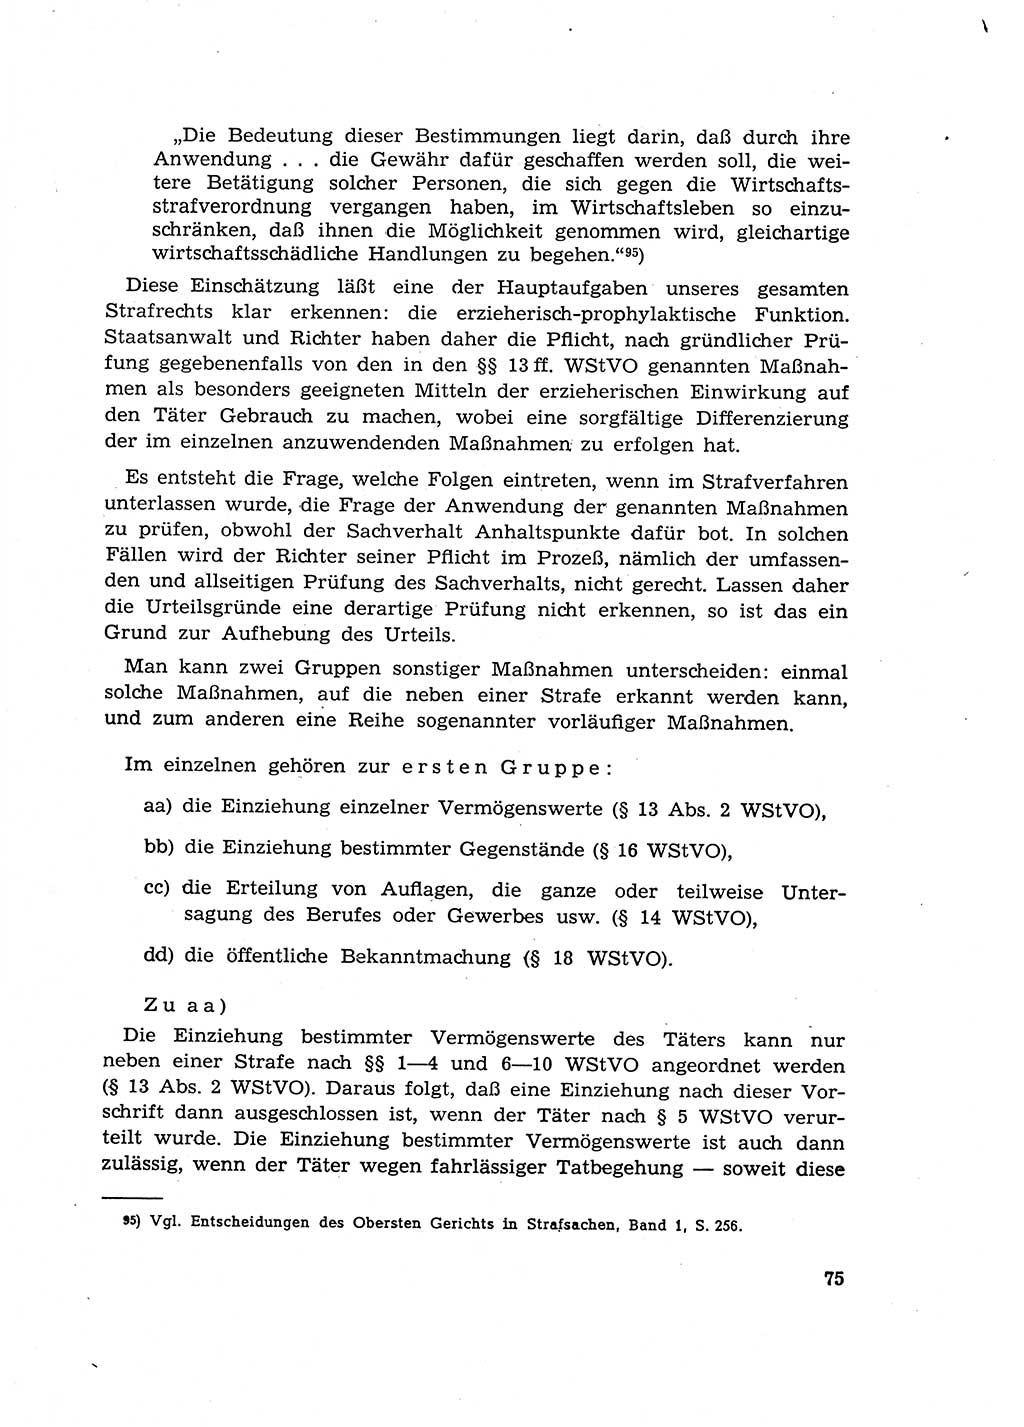 Materialien zum Strafrecht, Besonderer Teil [Deutsche Demokratische Republik (DDR)] 1955, Seite 75 (Mat. Strafr. BT DDR 1955, S. 75)